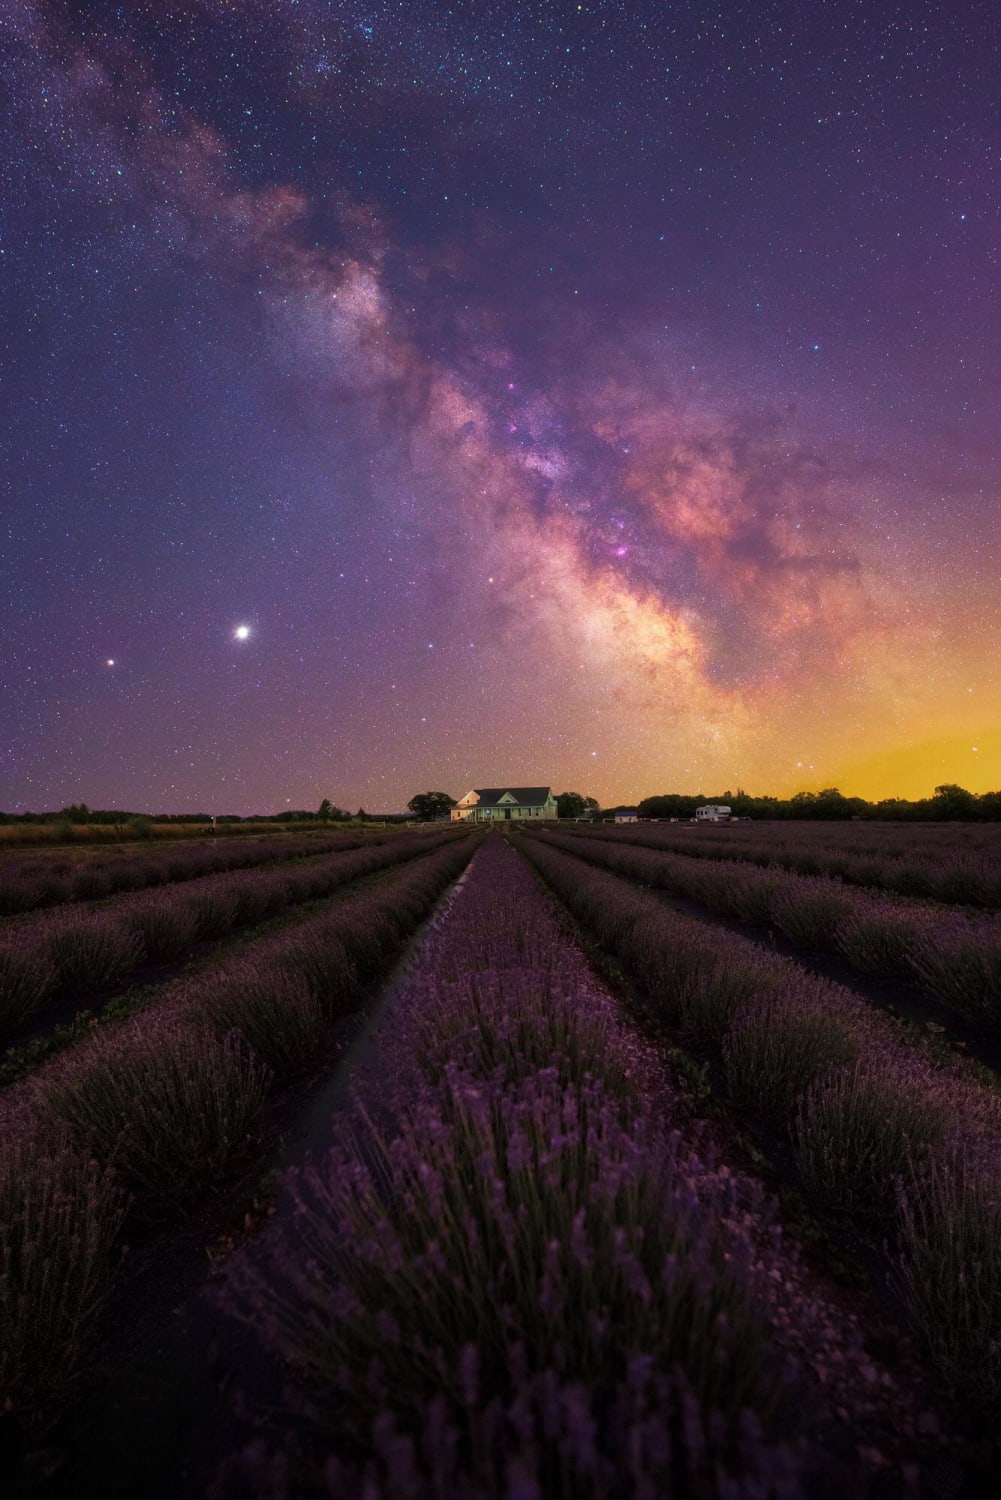 Milky Way over a lavender field in Ontario, Canada.